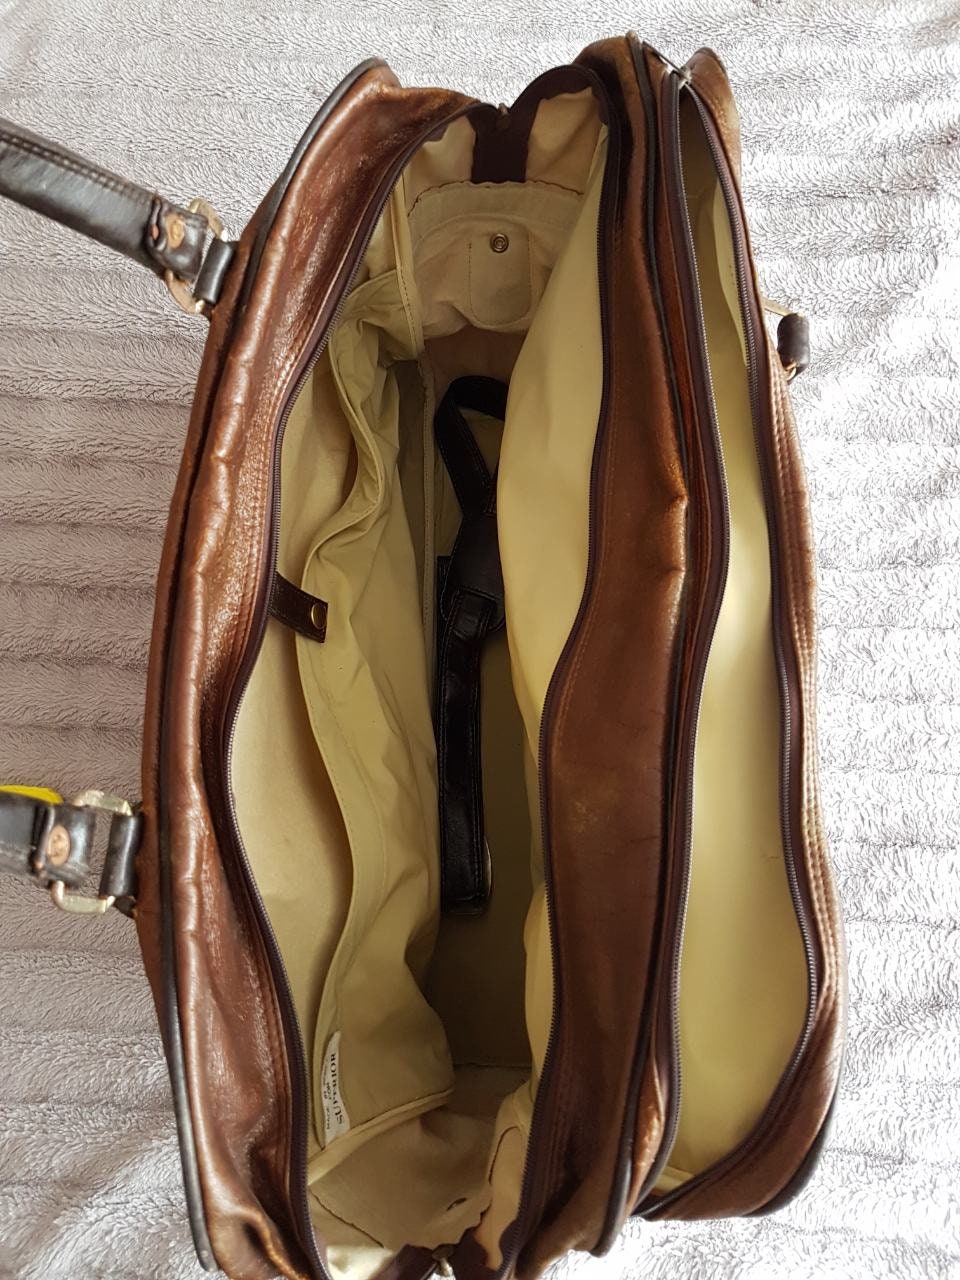 Leather traveling bag old traveling bag antique traveling | Etsy